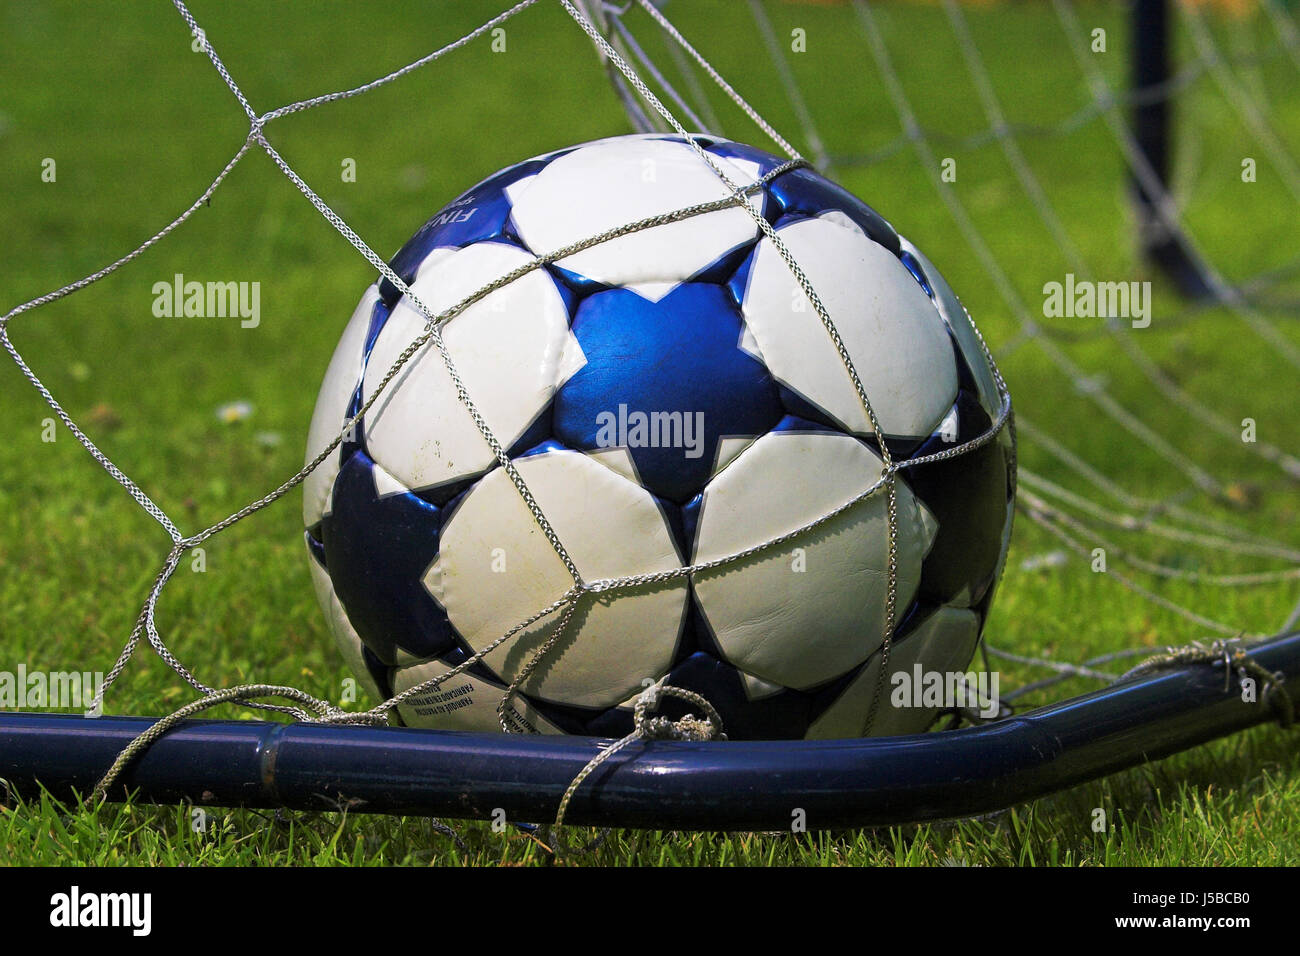 Sports sport championnat du monde de football soccer balle fuball-weltmeisterschaft Banque D'Images